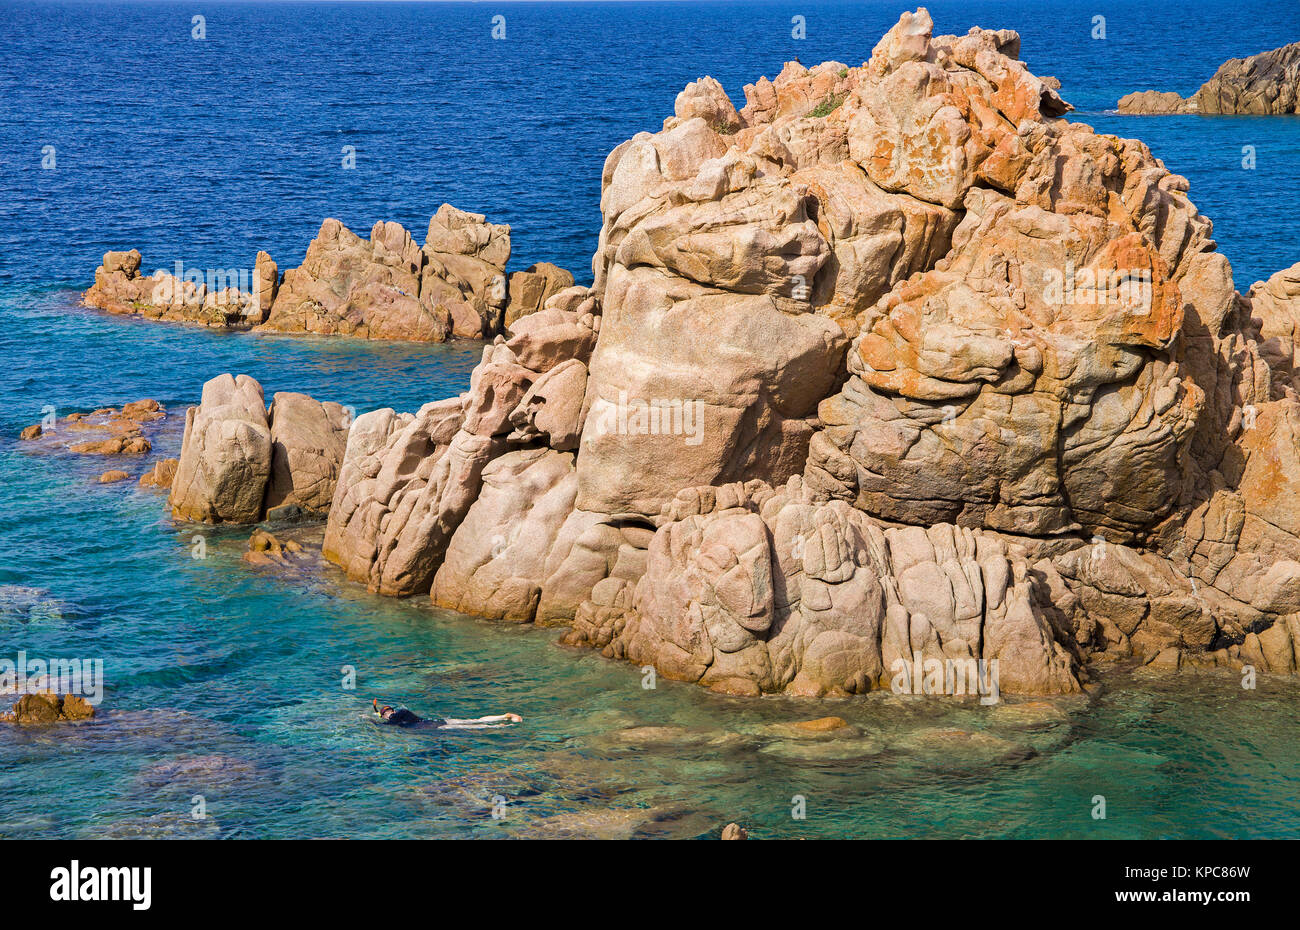 Snorkeler a rocce di porfido, Costa Paradiso, Sardegna, Italia, mare Mediterraneo, Europa Foto Stock